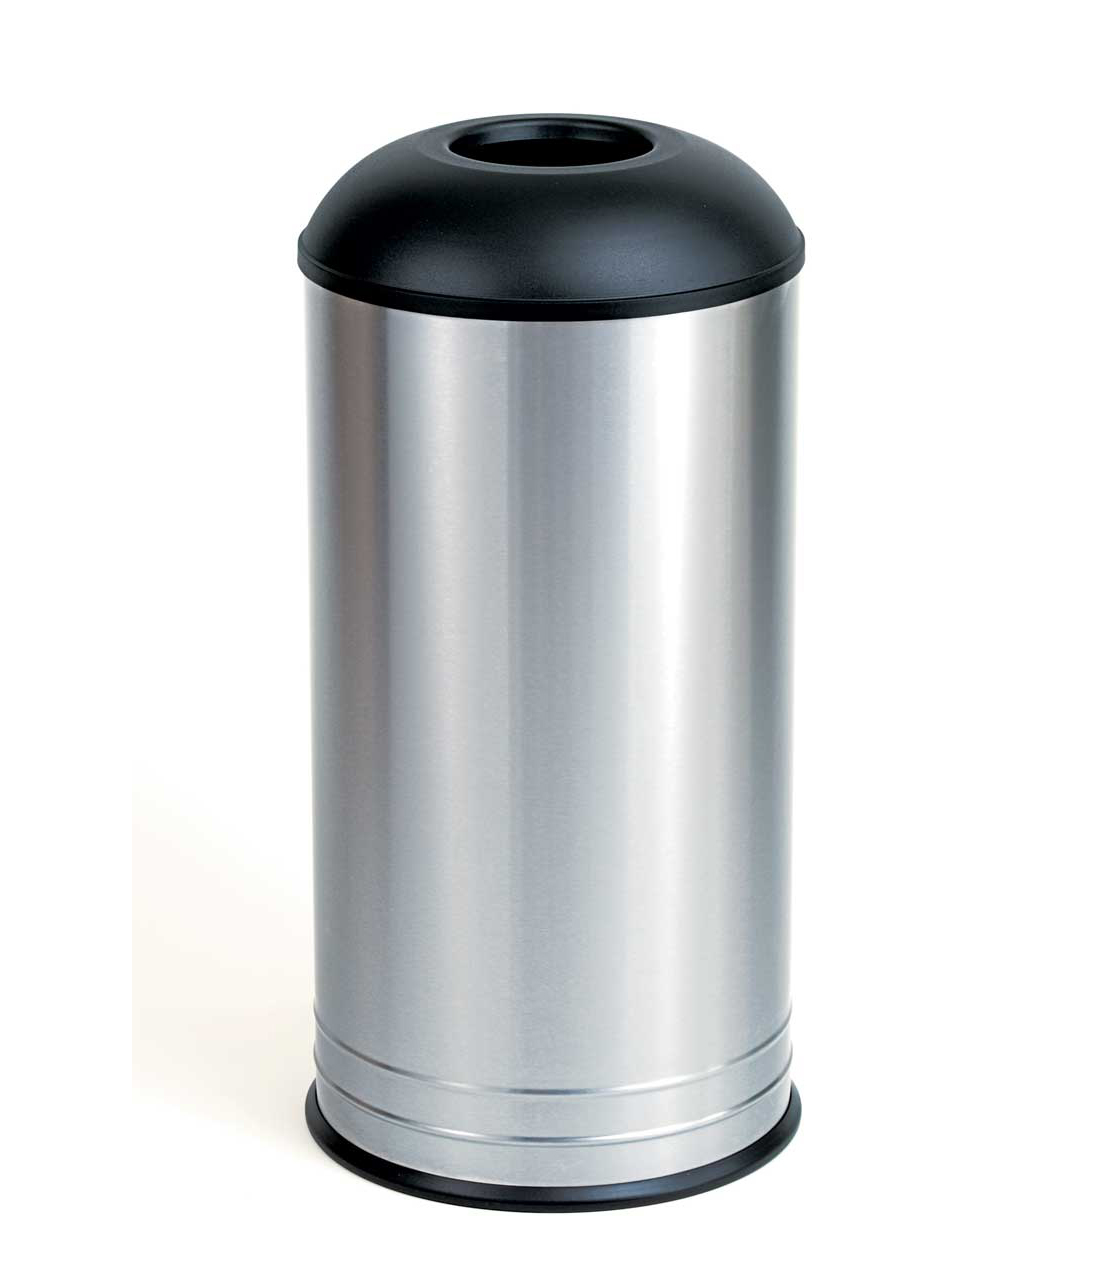 Freistehender Abfallbehälter mit rundem Oberteil Image